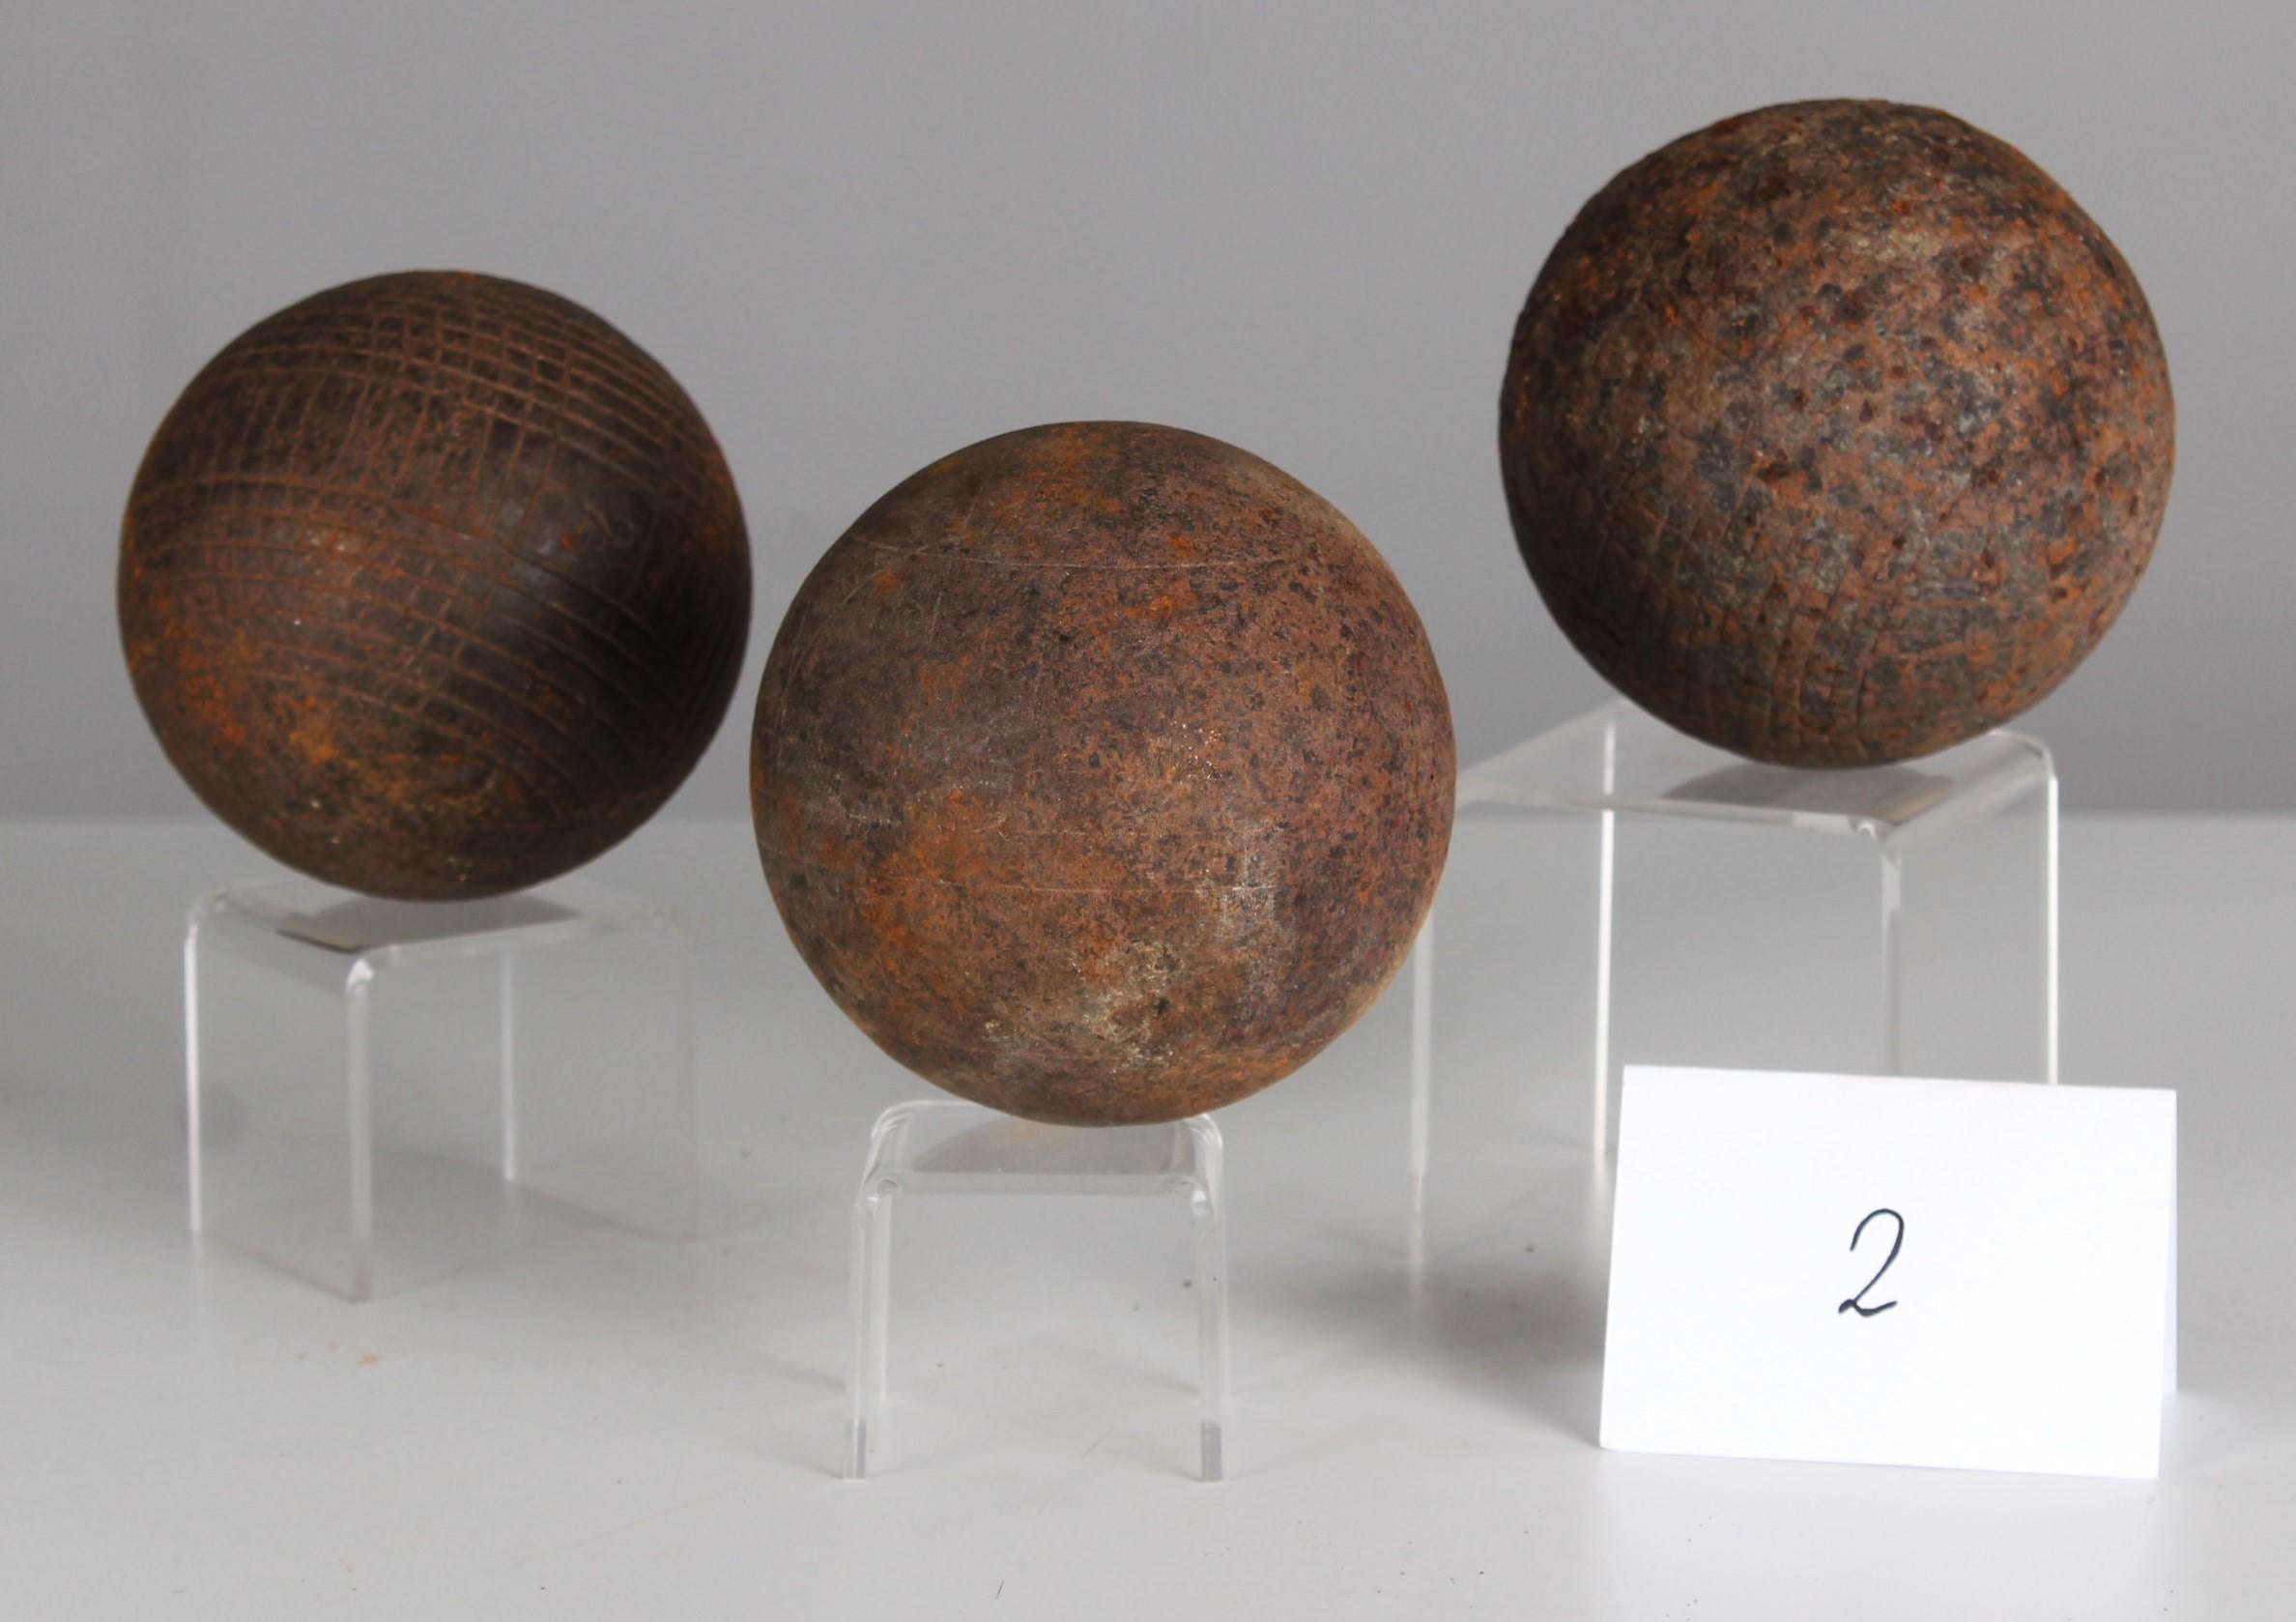 Magnifique jeu de boules unique composé de trois boules et d'une boule cible, France, fin du 19e siècle.
Diamètre 8,5 cm.

Une couleur et une patine fantastiques !

Au XIXe siècle, les boules de pétanque antiques en métal ont connu une renaissance